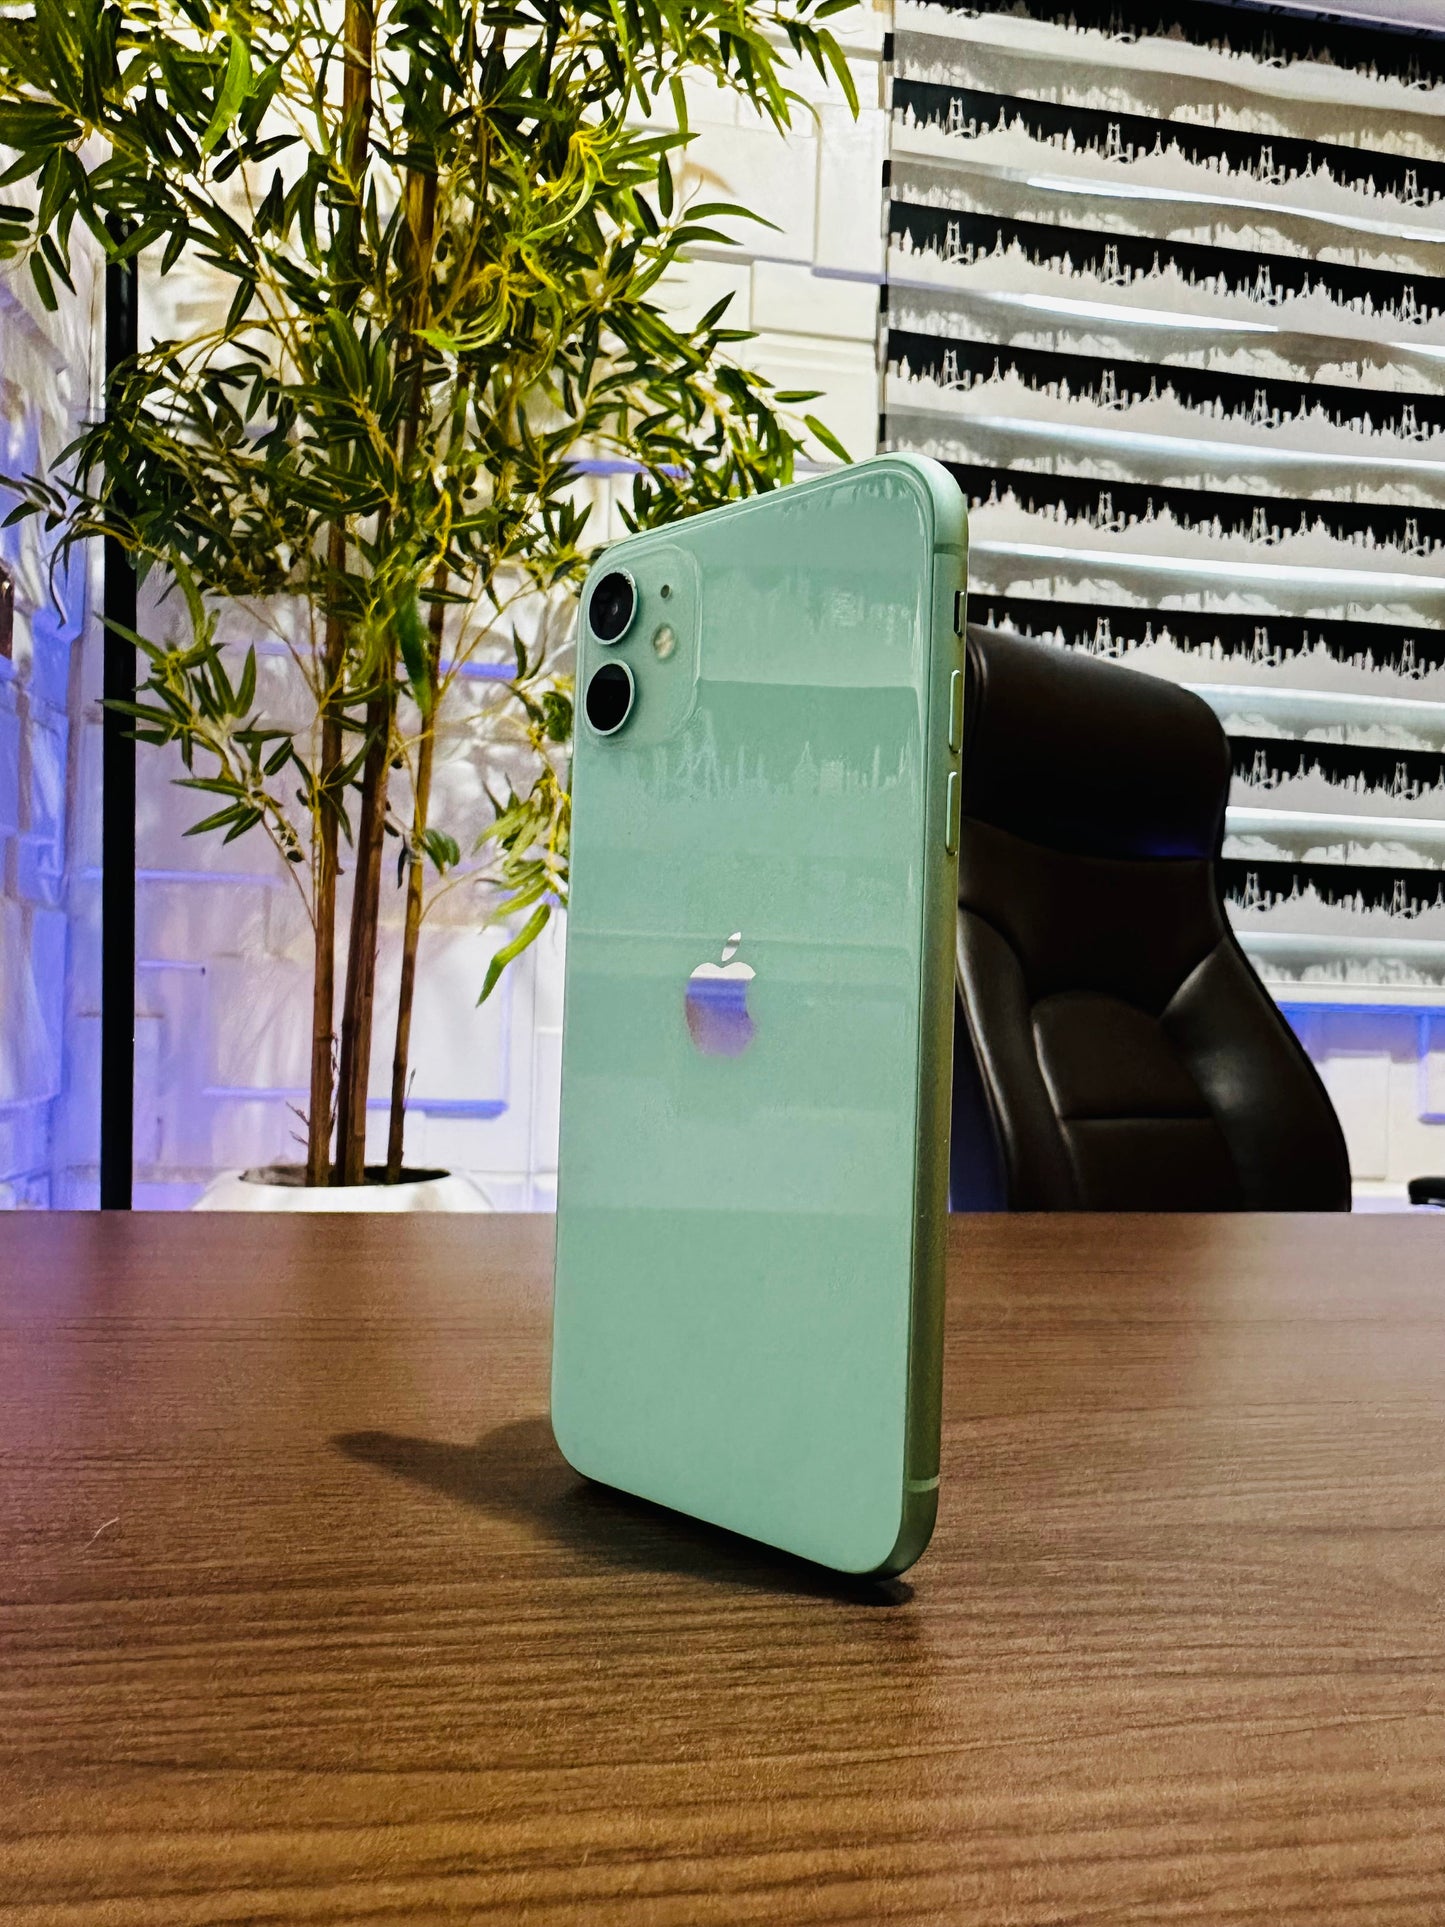 64GB Apple iPhone 11 - Green